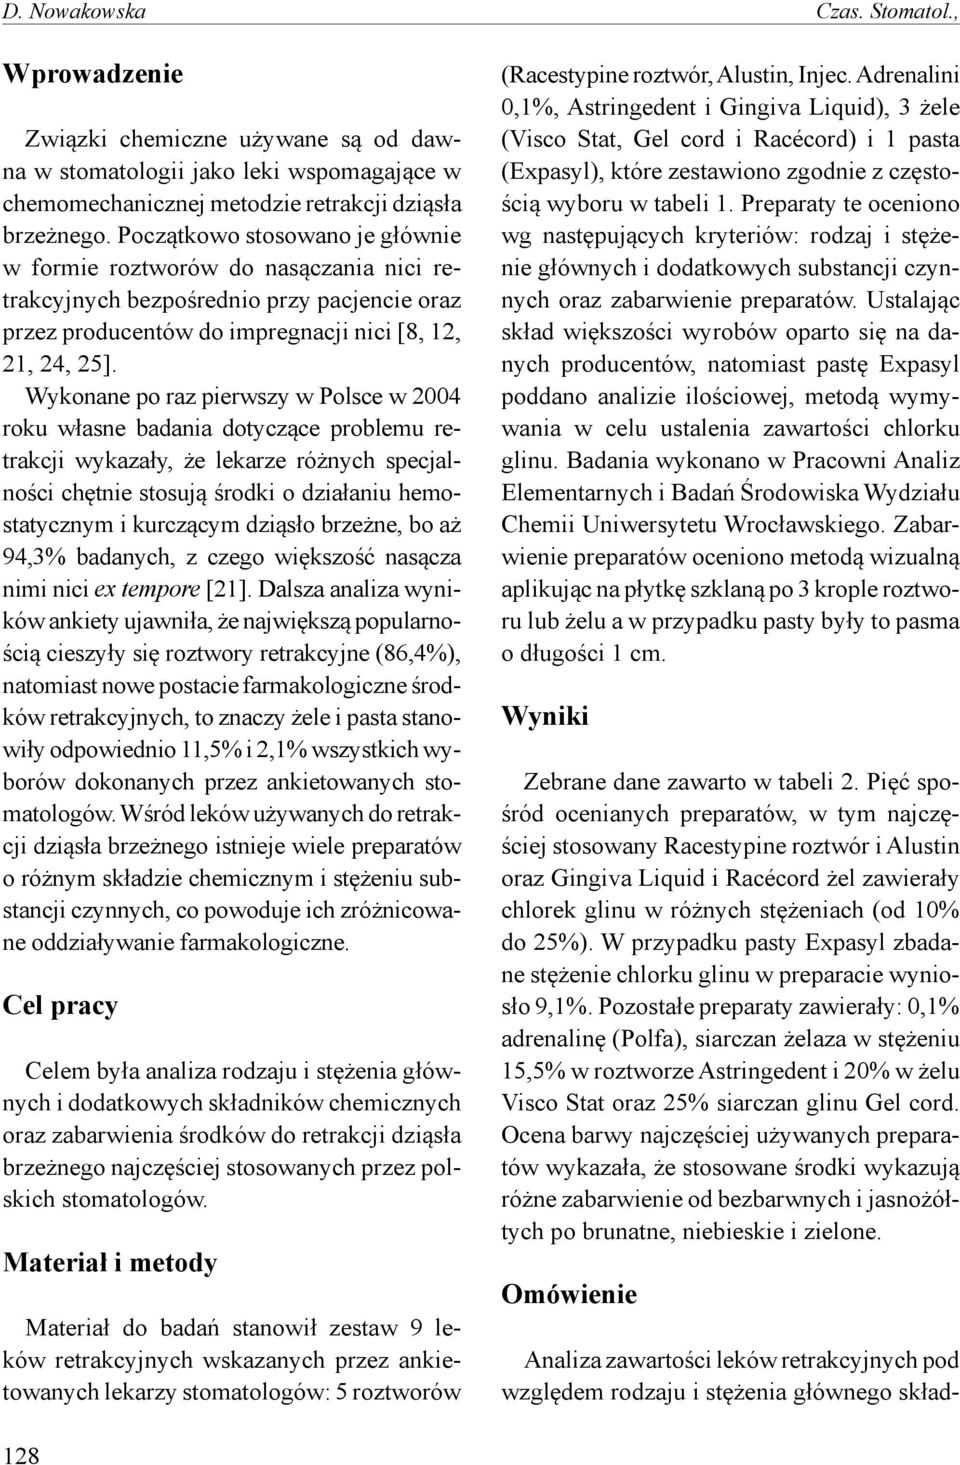 Wykonane po raz pierwszy w Polsce w 2004 roku własne badania dotyczące problemu retrakcji wykazały, że lekarze różnych specjalności chętnie stosują środki o działaniu hemostatycznym i kurczącym